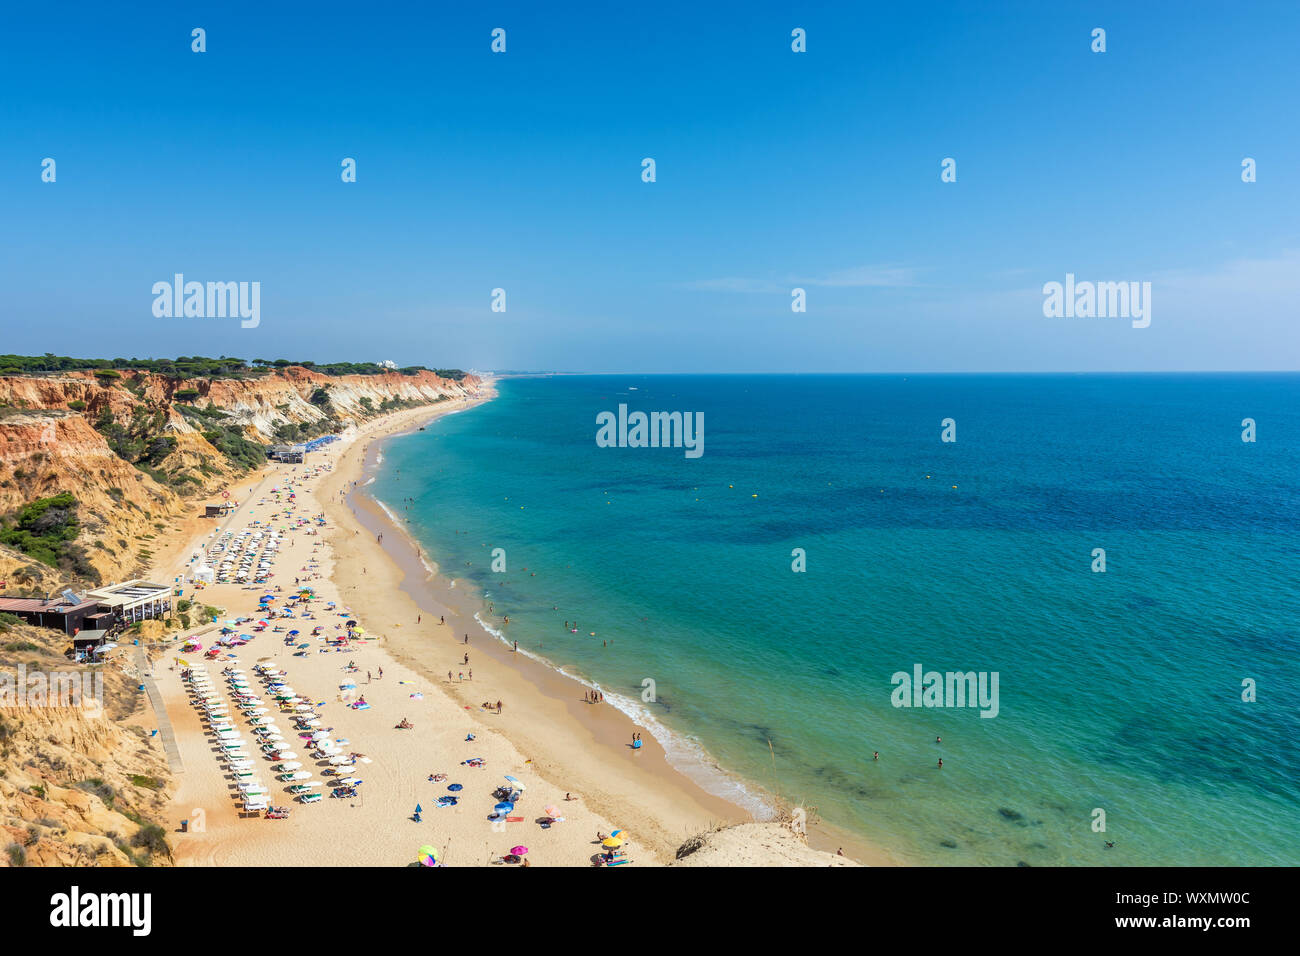 Praia da Falésia vicino a Albufeira come una delle più lunghe spiagge dell'Algarve Foto Stock